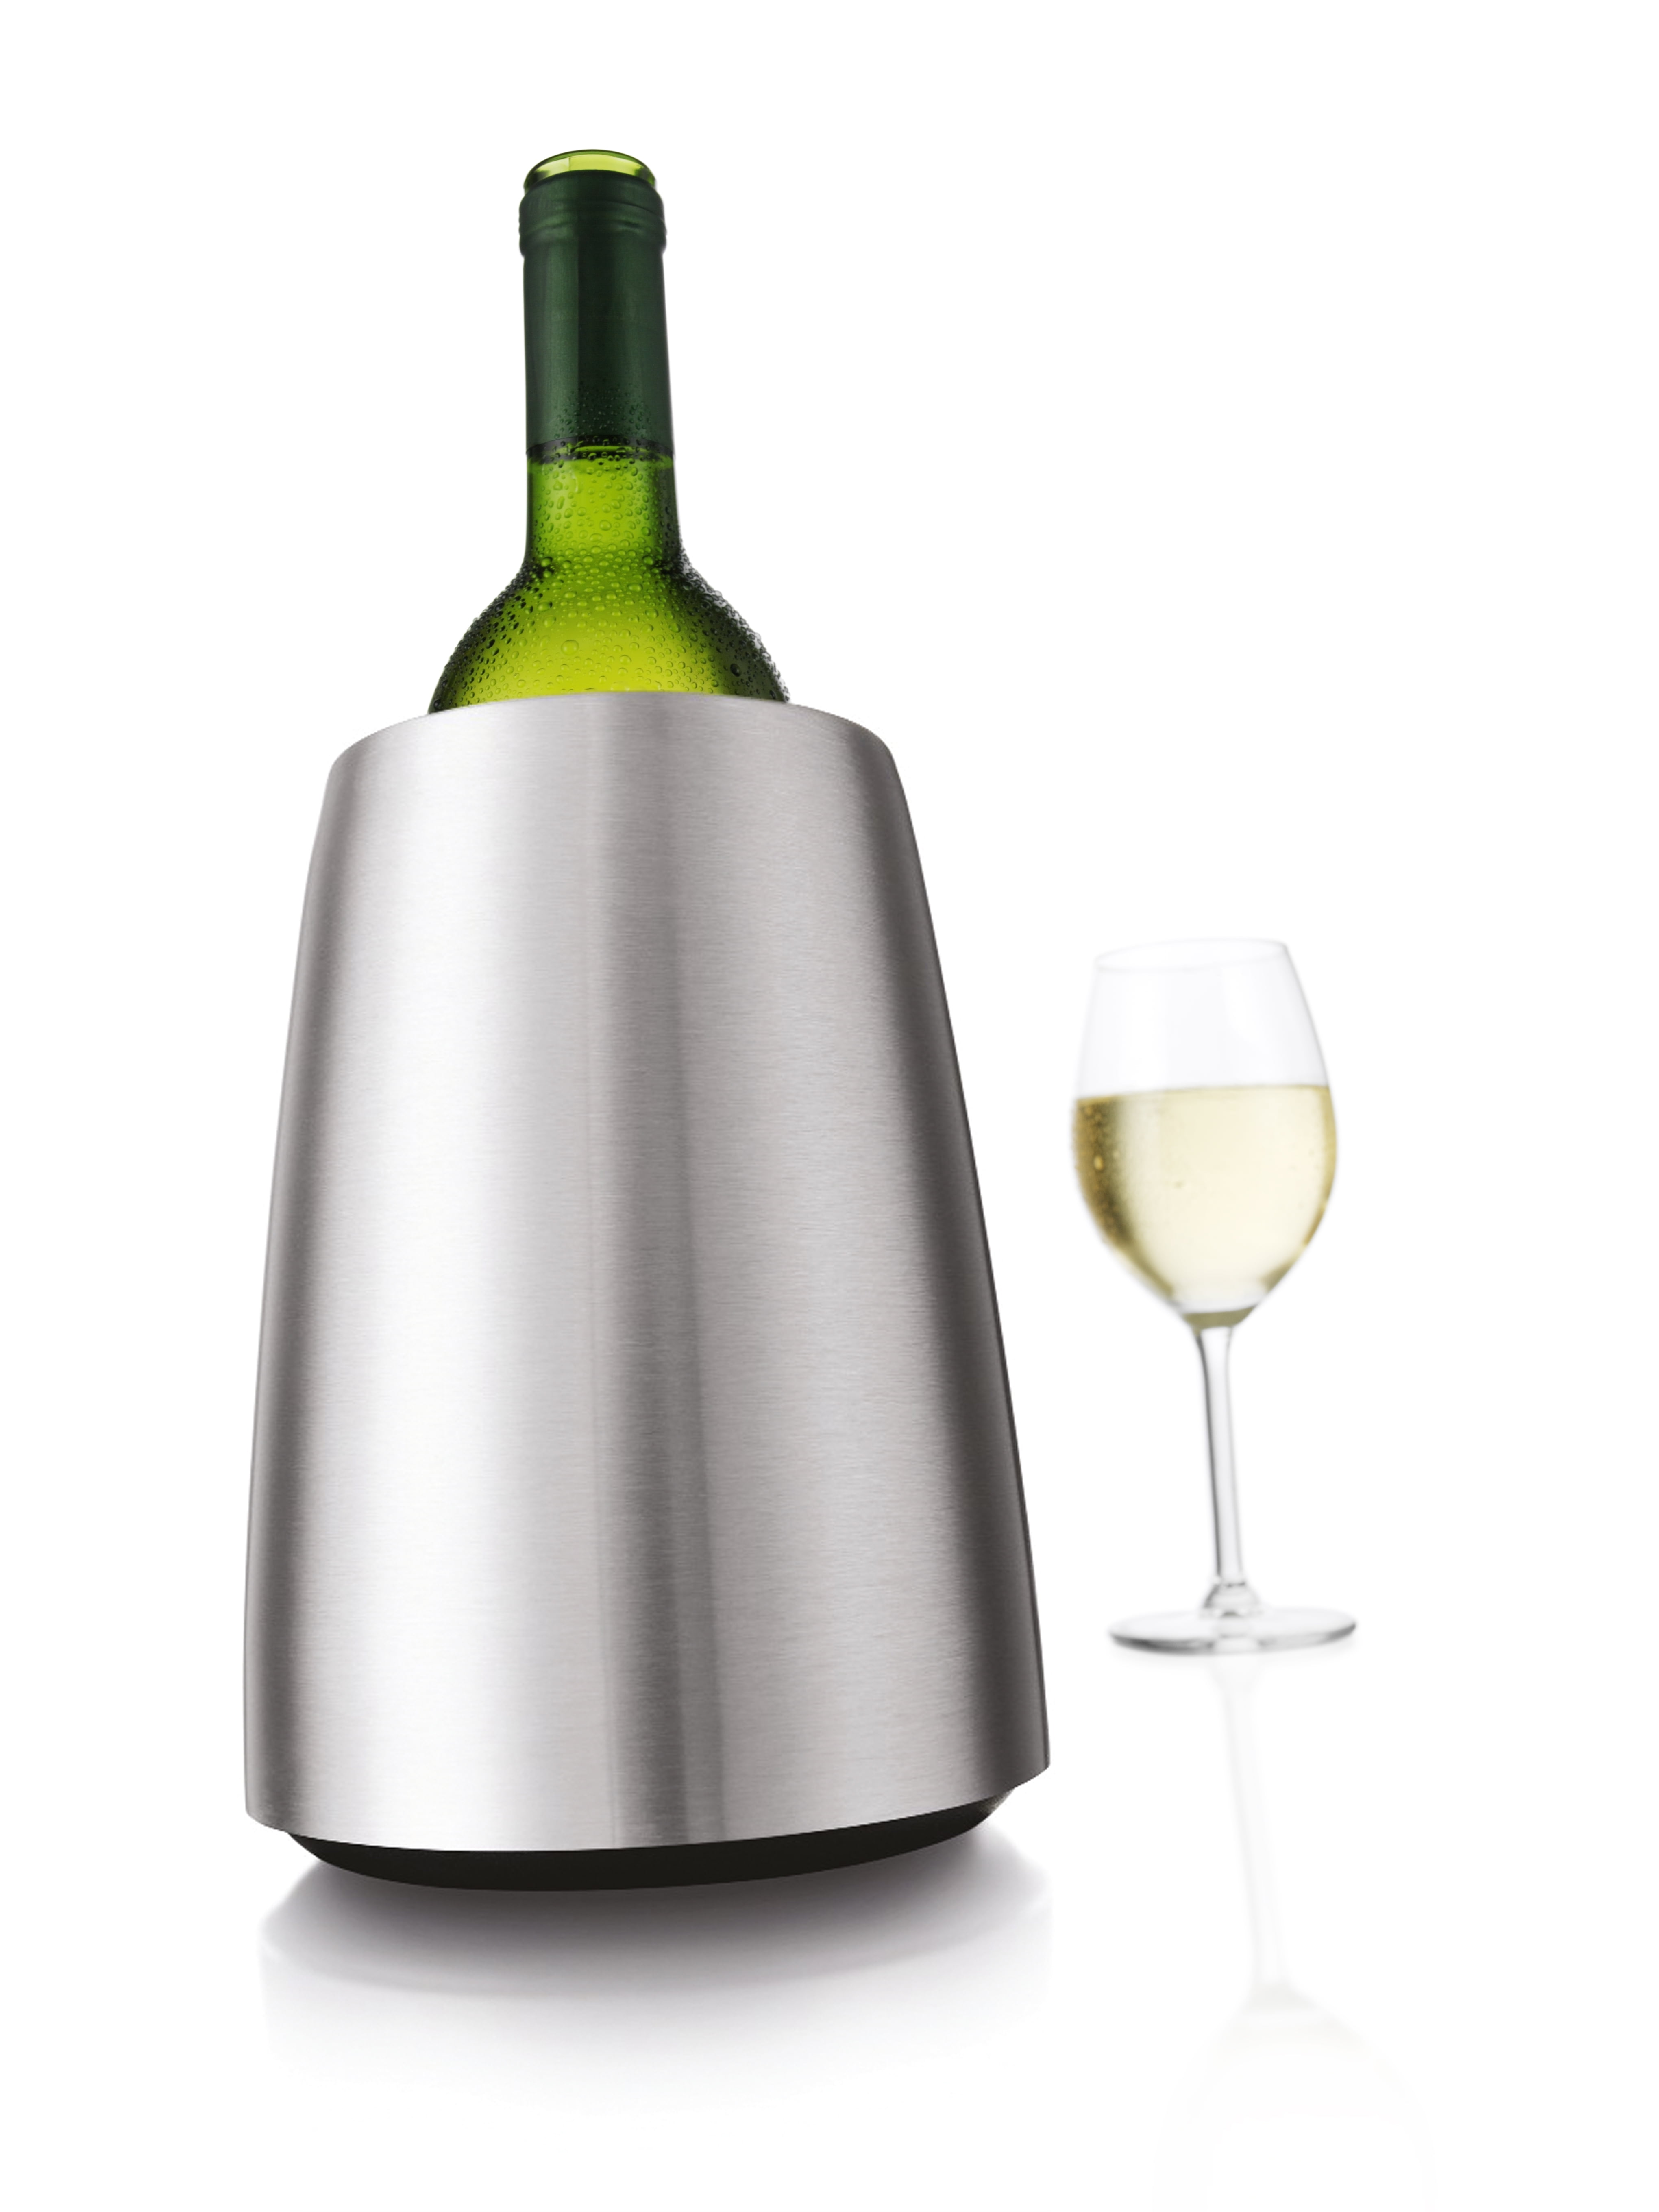 Staat Christus grijs Vacu Vin Active Cooler Wine Elegant, Stainless Steel in Gift Box -  Walmart.com